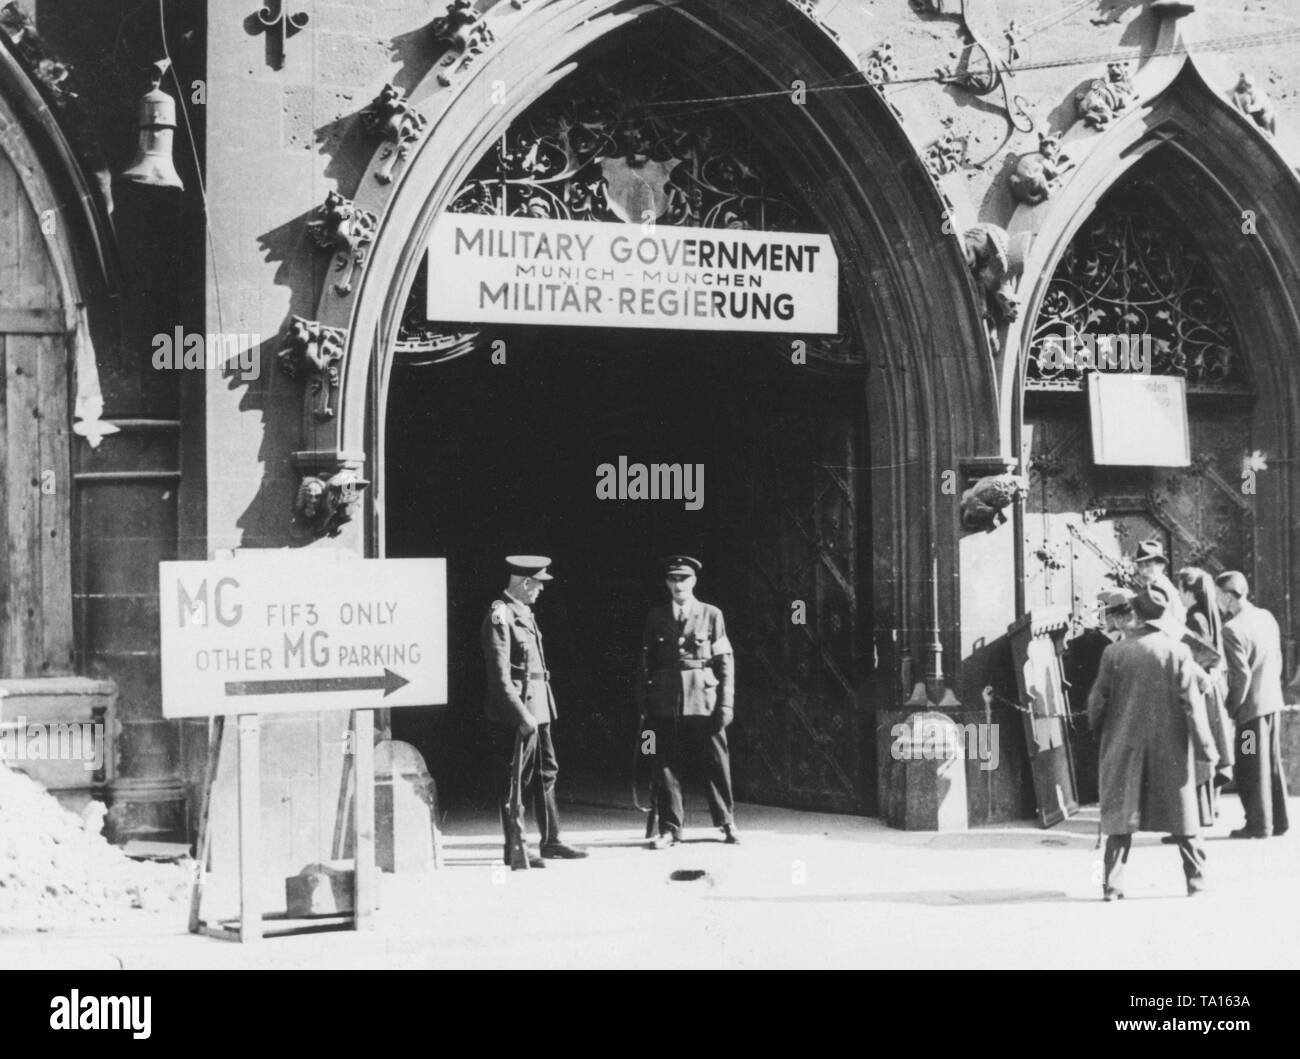 Zwei deutsche Polizisten sind Wache vor dem Münchner Rathaus, dem Sitz der amerikanischen Militärregierung. Über dem Eingang hängt ein Schild "militärische Regierung München - München Militär-Regierung'. Stockfoto